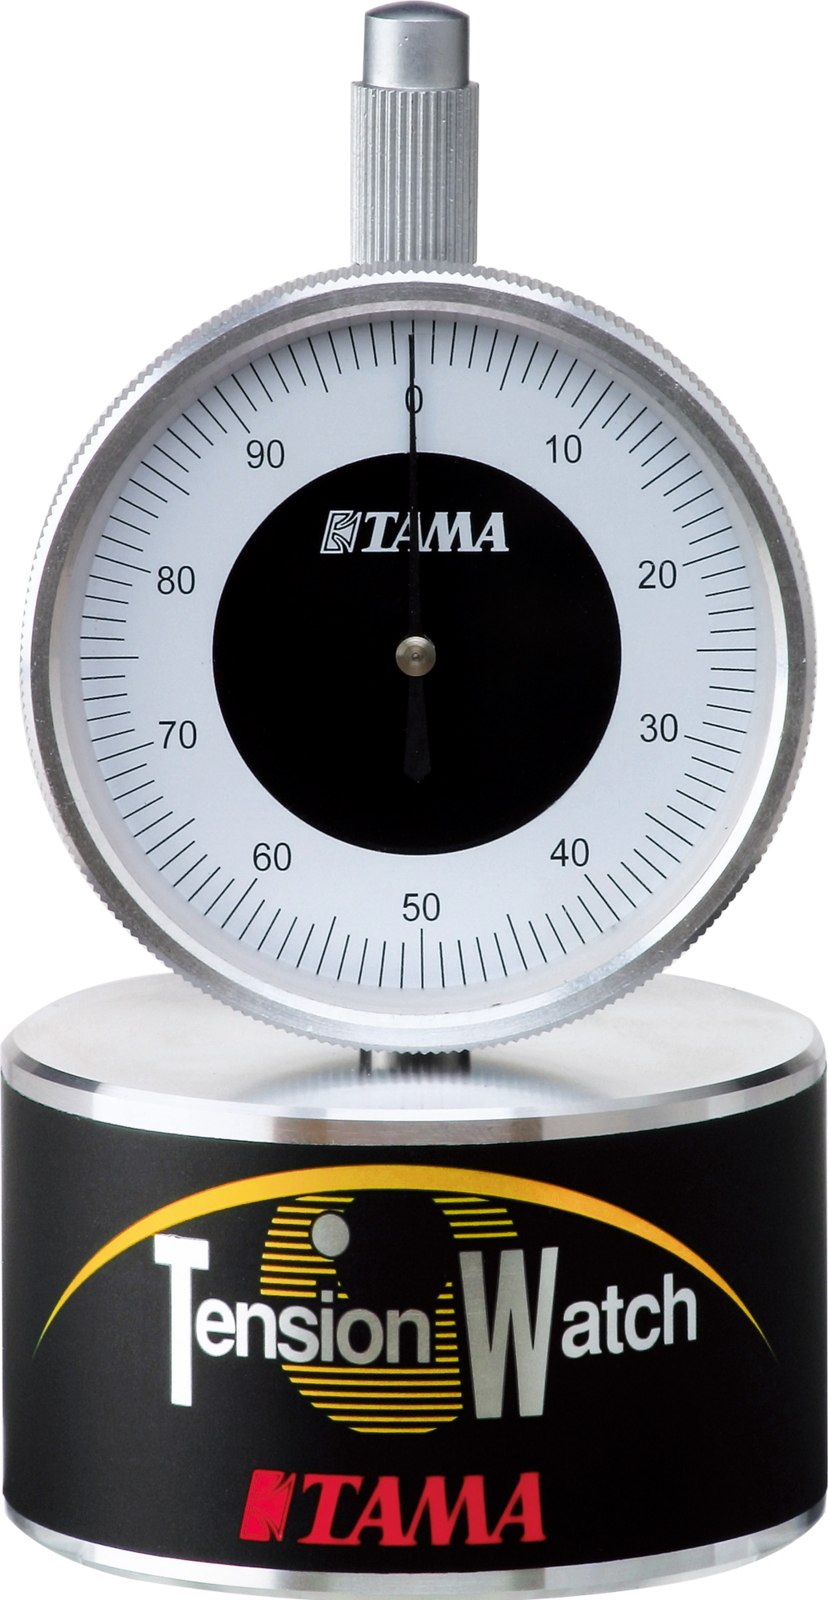 Afinador de batería Tama TW 100 Tension Watch Afinador de batería